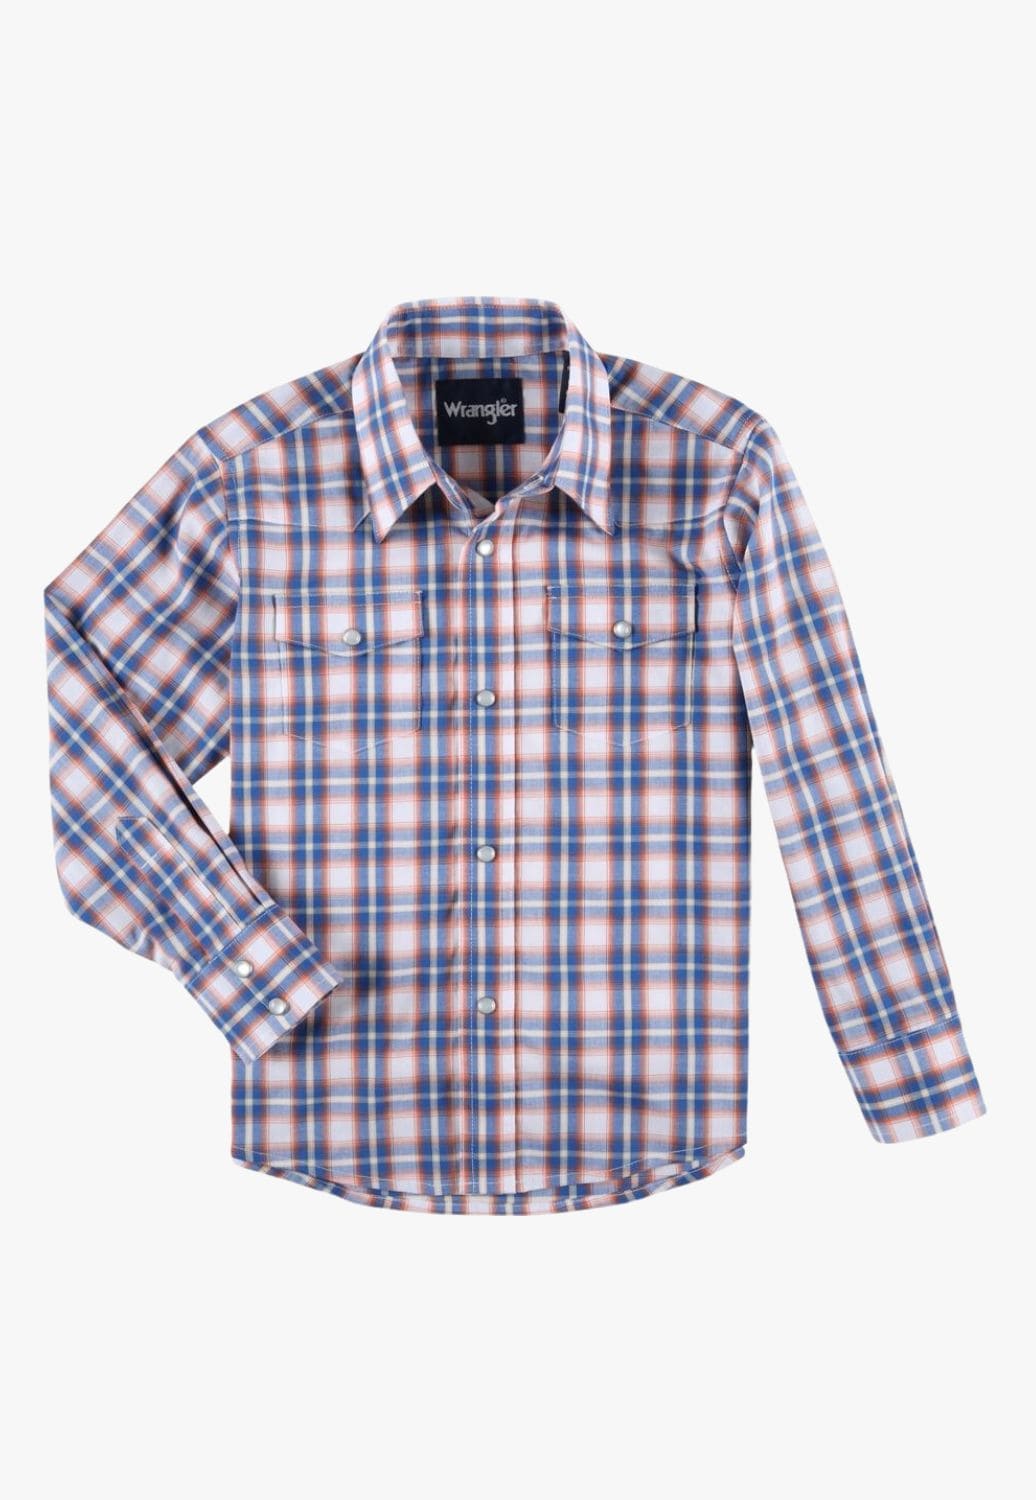 Wrangler CLOTHING-Boys Long Sleeve Shirts Wrangler Boys Long Sleeve Shirt